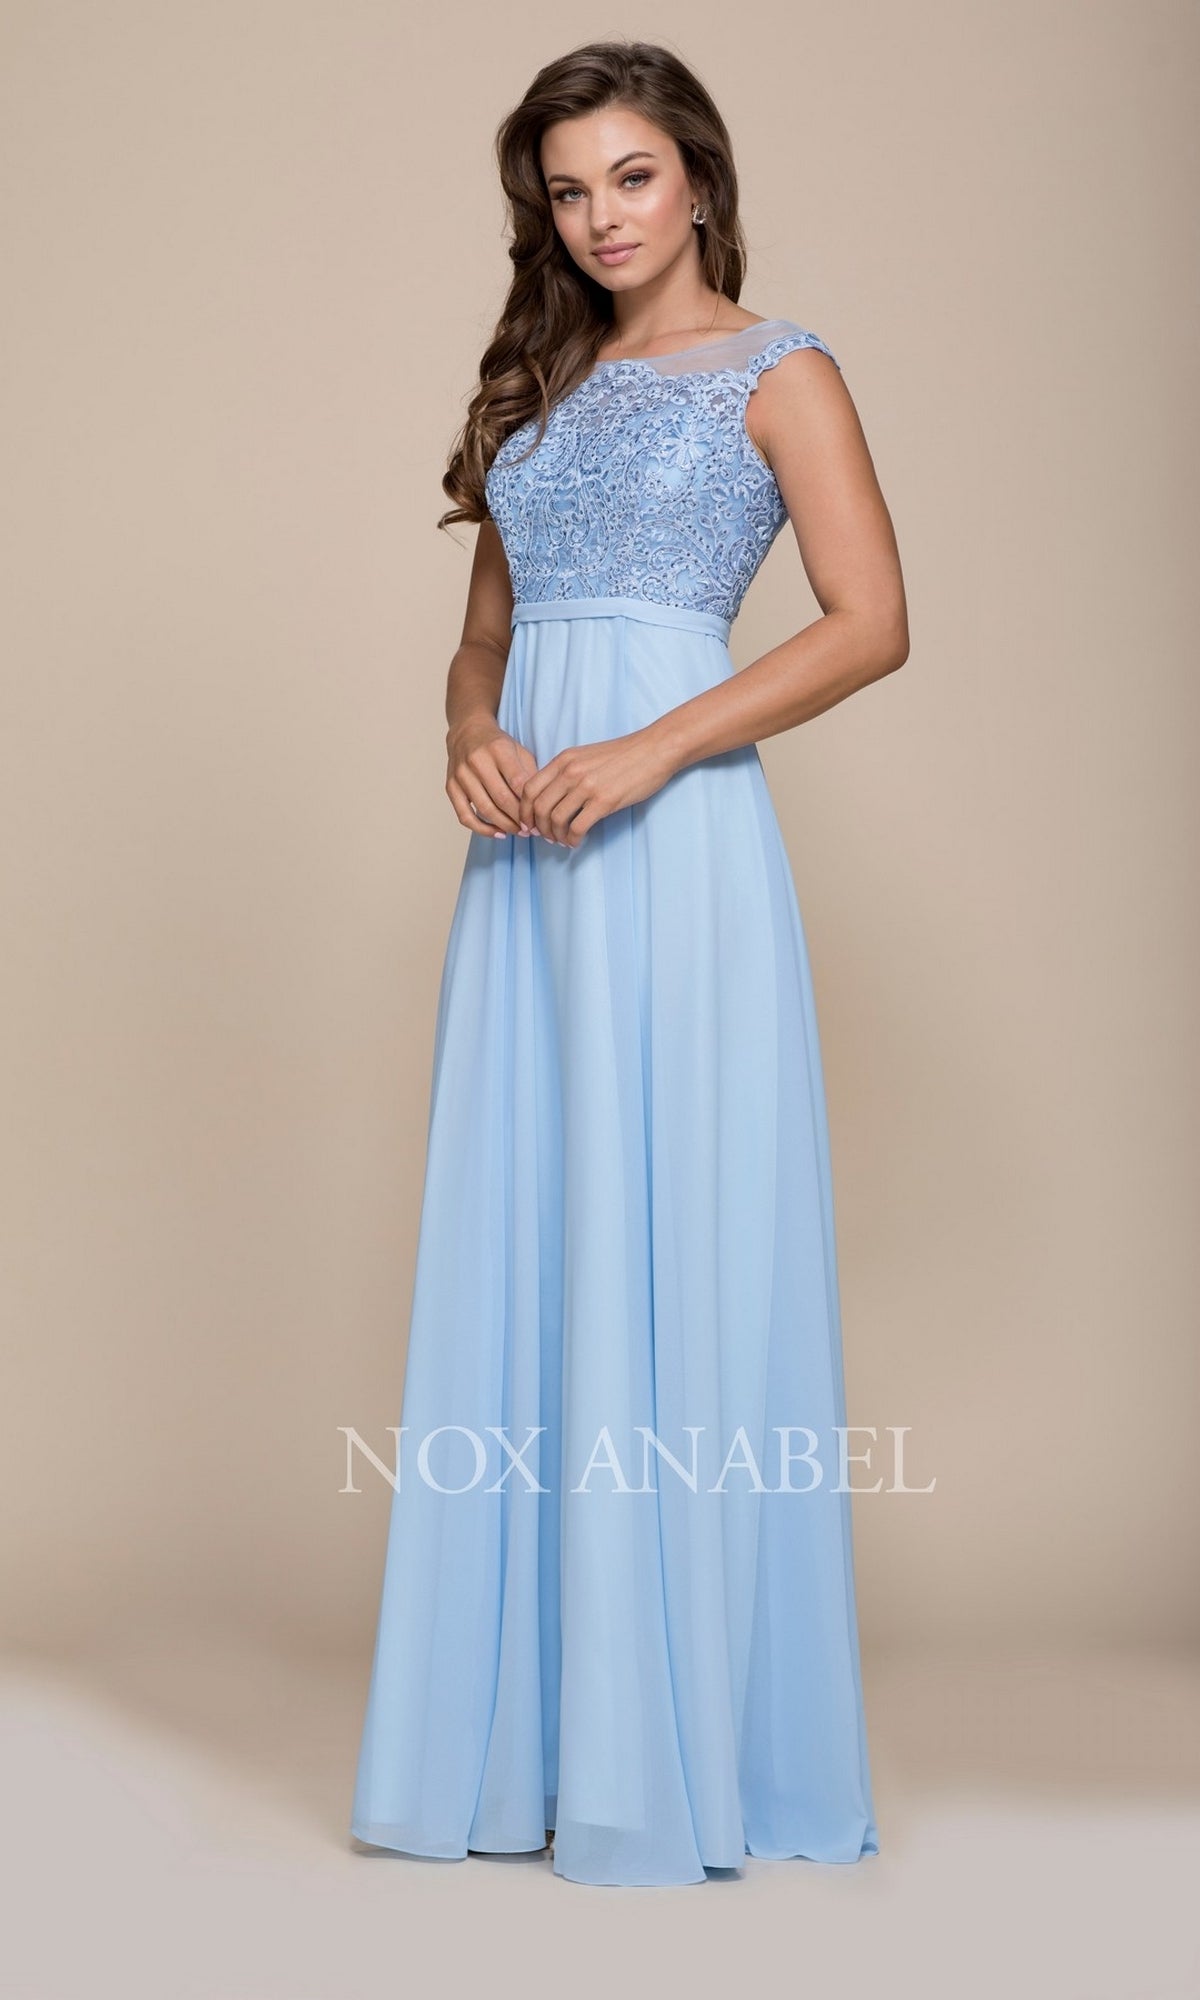 Ice Blue Chiffon Long Prom Dress With Belt